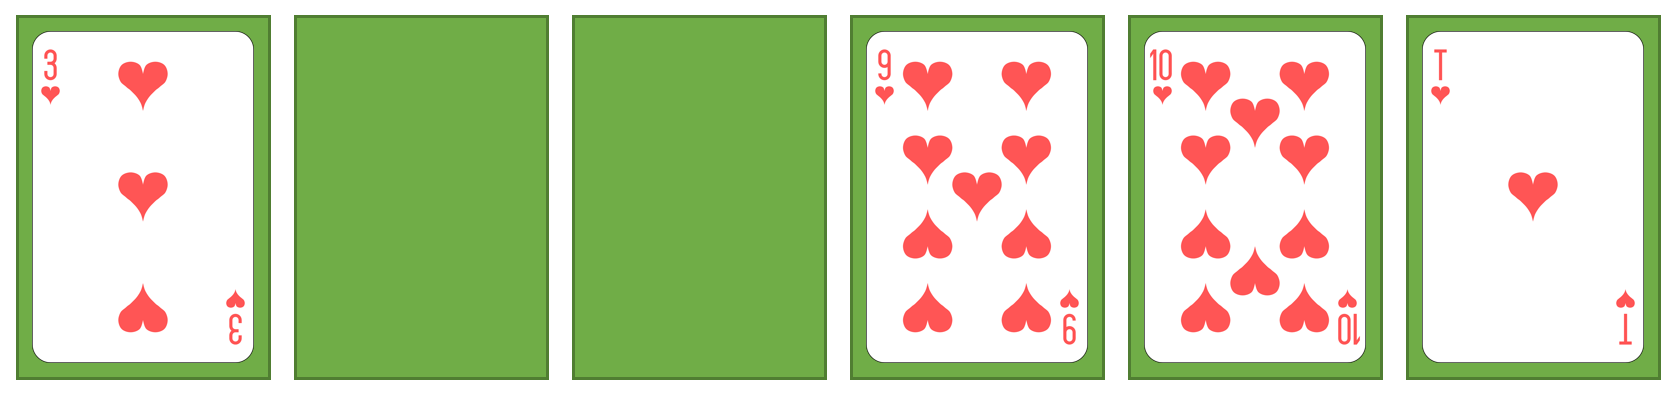 spielkarten-sort4-5